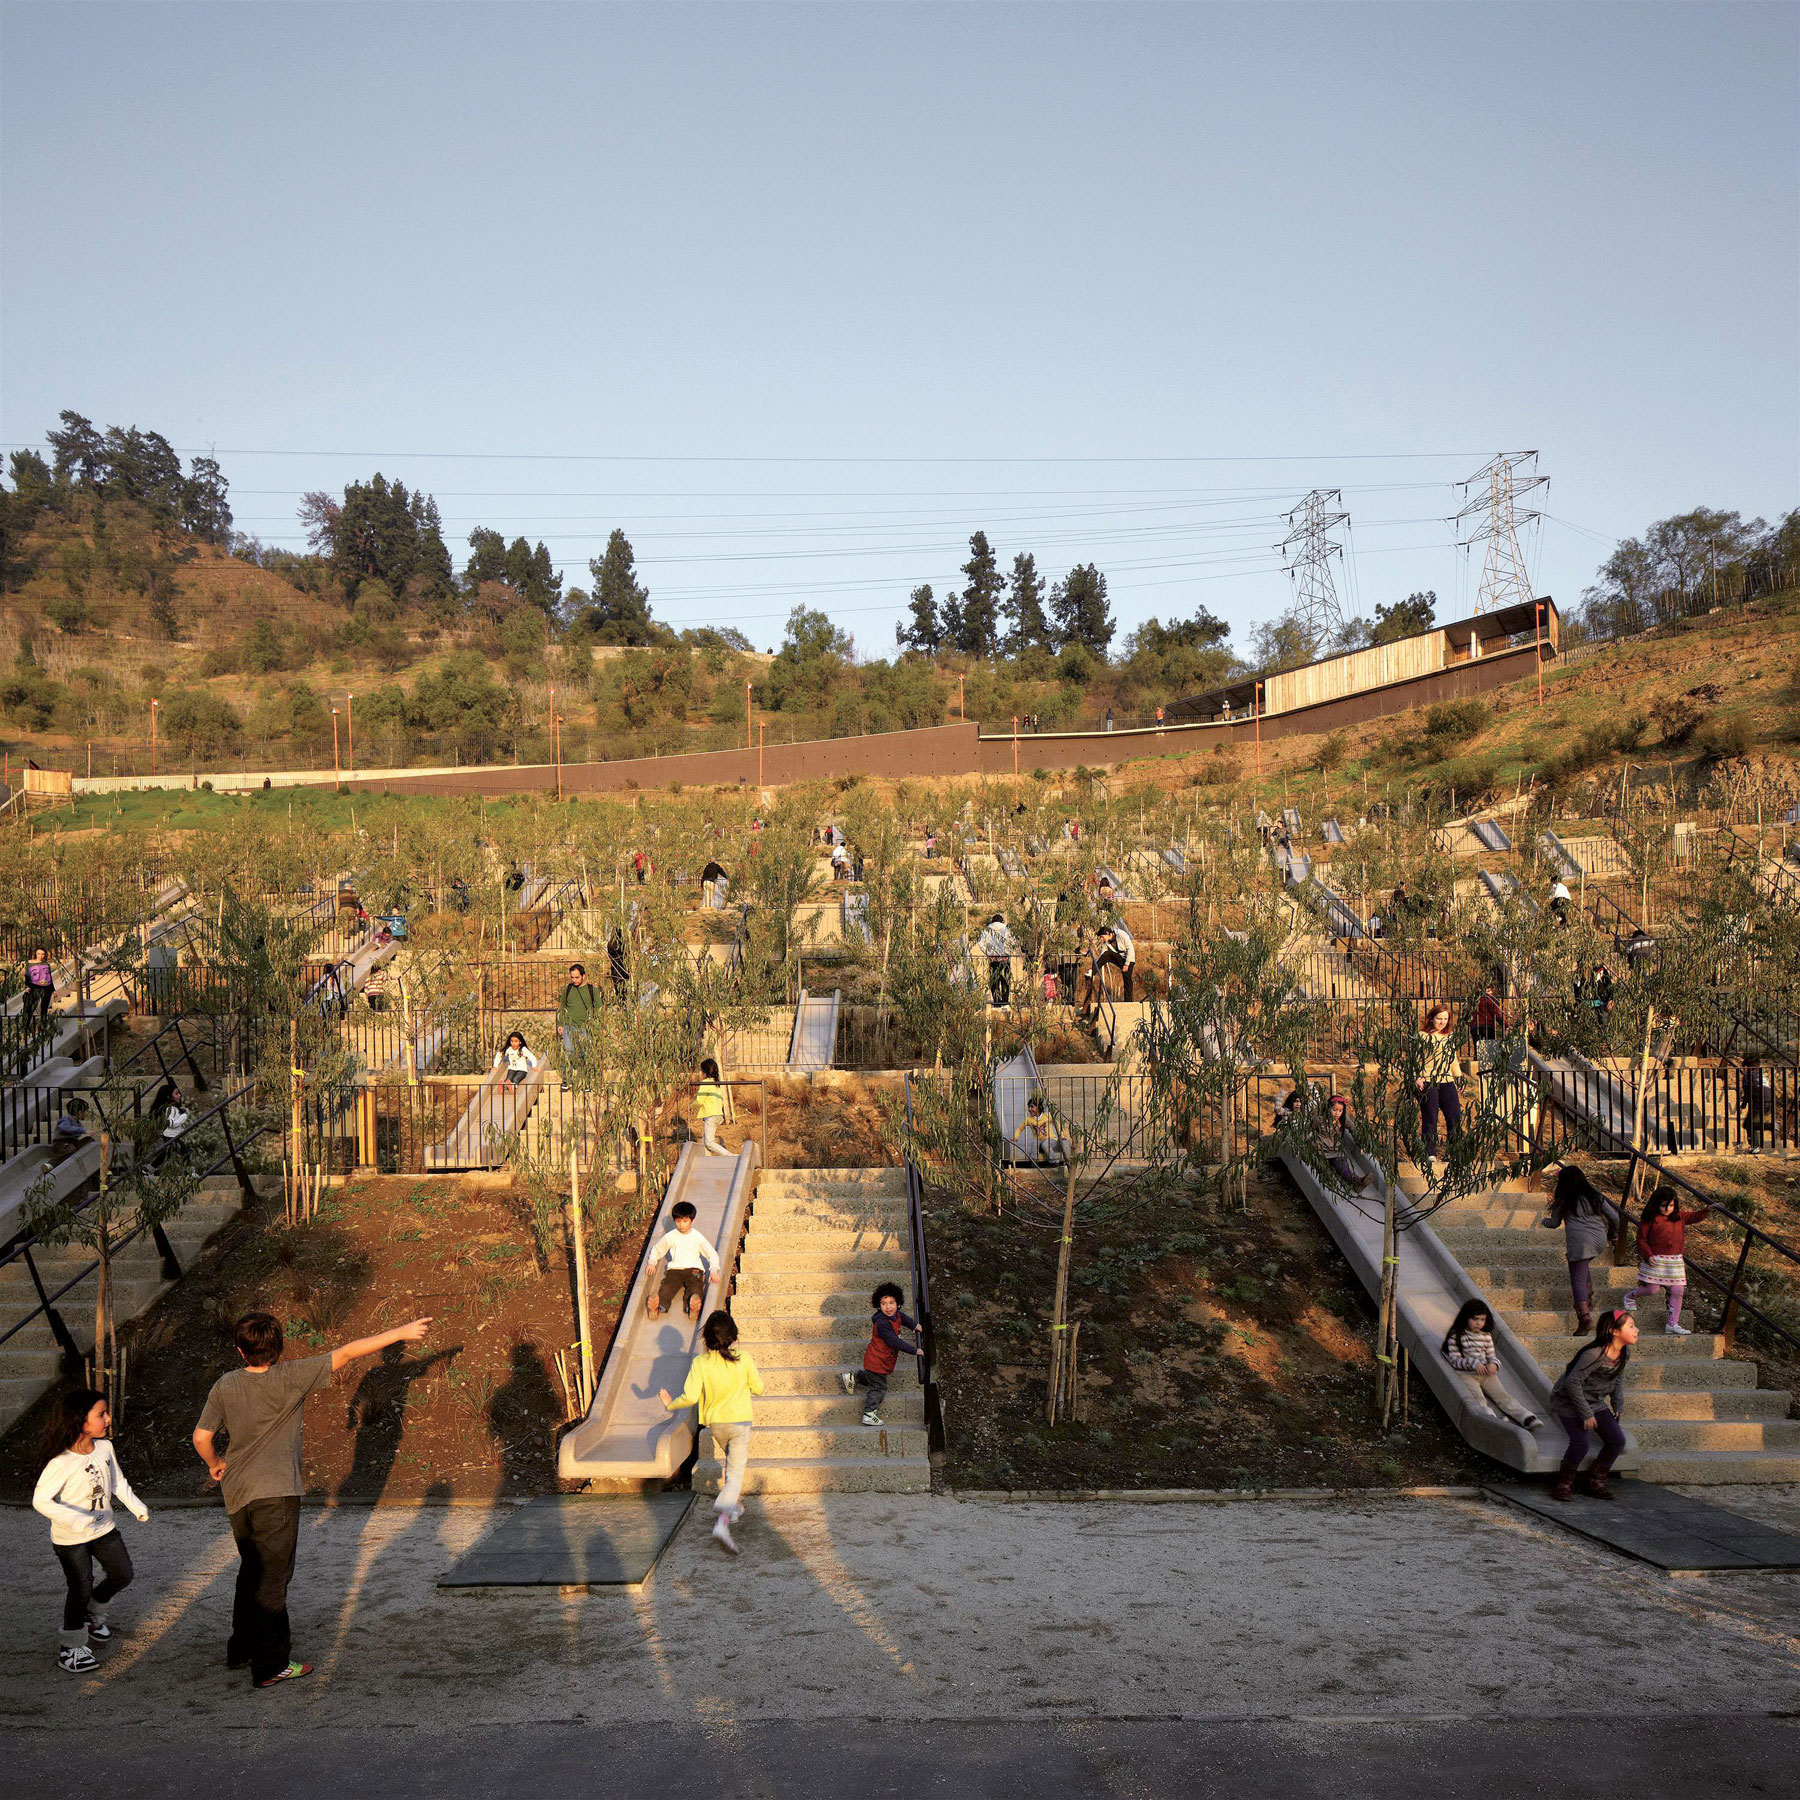 Štvorhektárový detský park v Santiago de Chile z roku 2012 je fascinujúcim verejným priestranstvom, ktoré neslúži len deťom. Bol súčasťou projektu k dvojstému výročiu nezávislosti Čile. Foto: Cristobal Palma